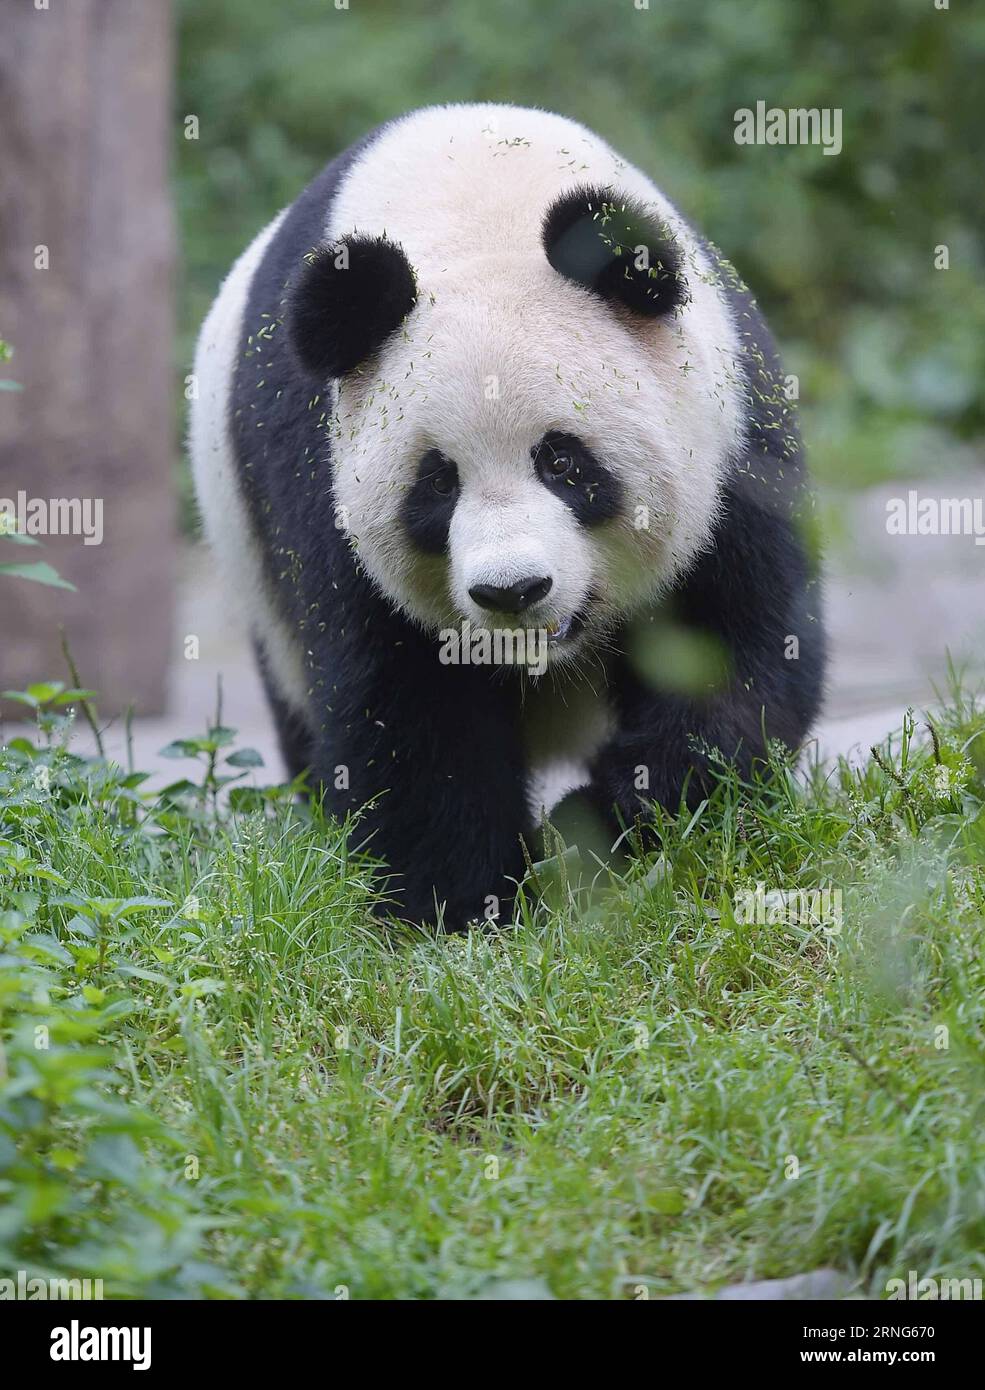 CHENGDU, 2016 – Giant Panda Sixue wird in der Hetaoping Wild Training Base, südwestchinesische Provinz Sichuan, 29. August 2016 gesehen. Sixue wird ihr Junges Yingxue auf der Suche nach Nahrung und Wasser Schulen und dabei während der ersten Phase des Wildtrainings Raubtiere meiden. Mit der zunehmenden Anzahl von Pandas, die in Gefangenschaft gezüchtet und gehalten werden, begann China 2006, Pandas in Gefangenschaft in die Wildnis zu schicken, um die genetische Vielfalt und Qualität der Arten zu verbessern. ) (wx) CHINA-CHENGDU-RIESE PANDA-RÜCKKEHR ZUM WILDTRAINING (CN) XuexYubin PUBLICATIONxNOTxINxCHN Chengdu 2016 Giant Panda IS Lakes in H Stockfoto